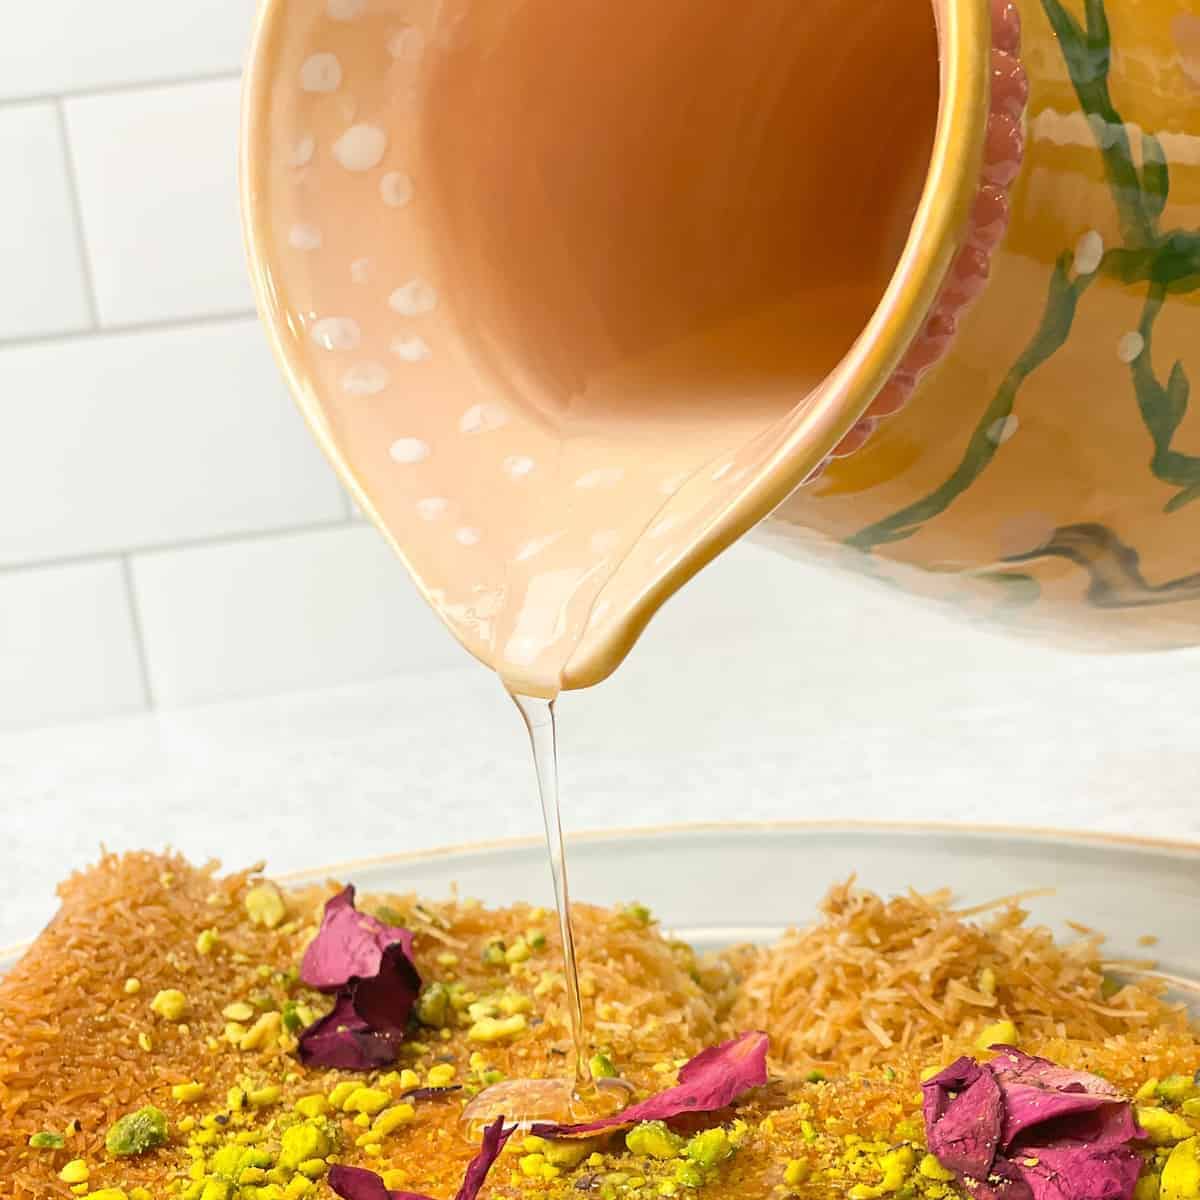 Atir which is also known as blossom and rose water syrup is used on many middle eastern desserts like kanafa, kunafa, chanafa, atayif, halawit el jibn, atayef, qatayif, 